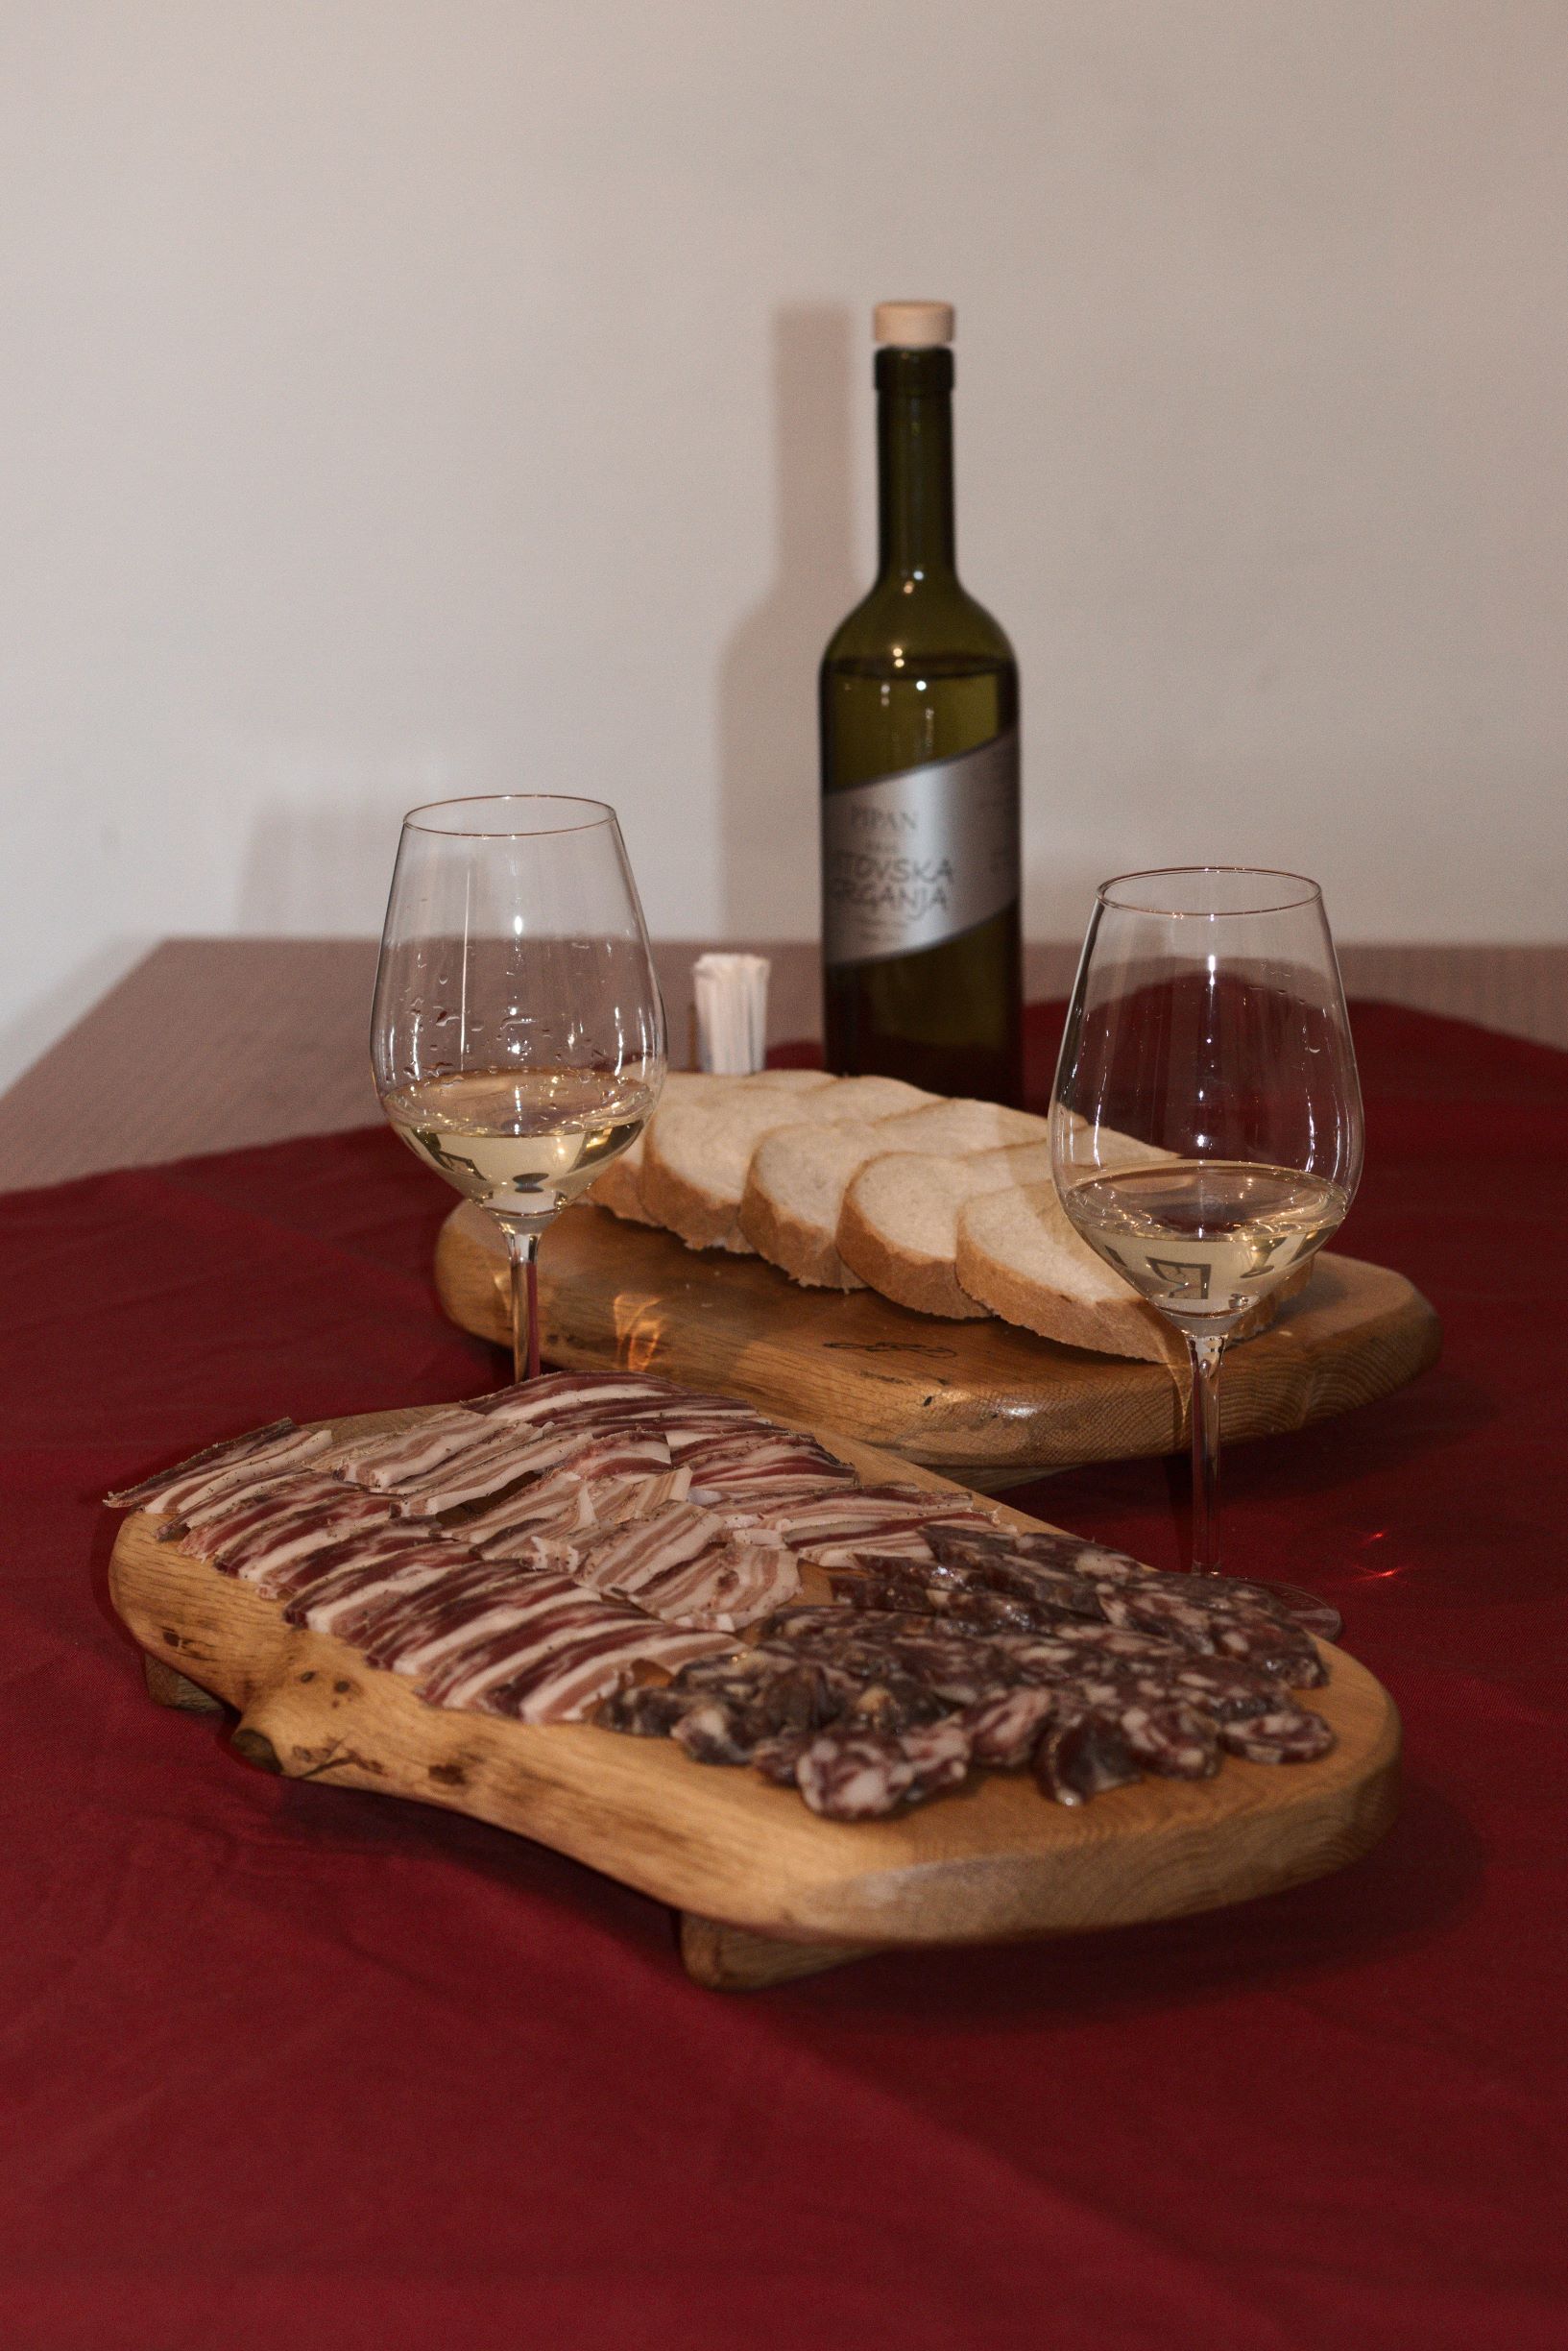 Vinogradništvo in vinarstvo Pipan – Vodena degustacija vin in ogled kleti